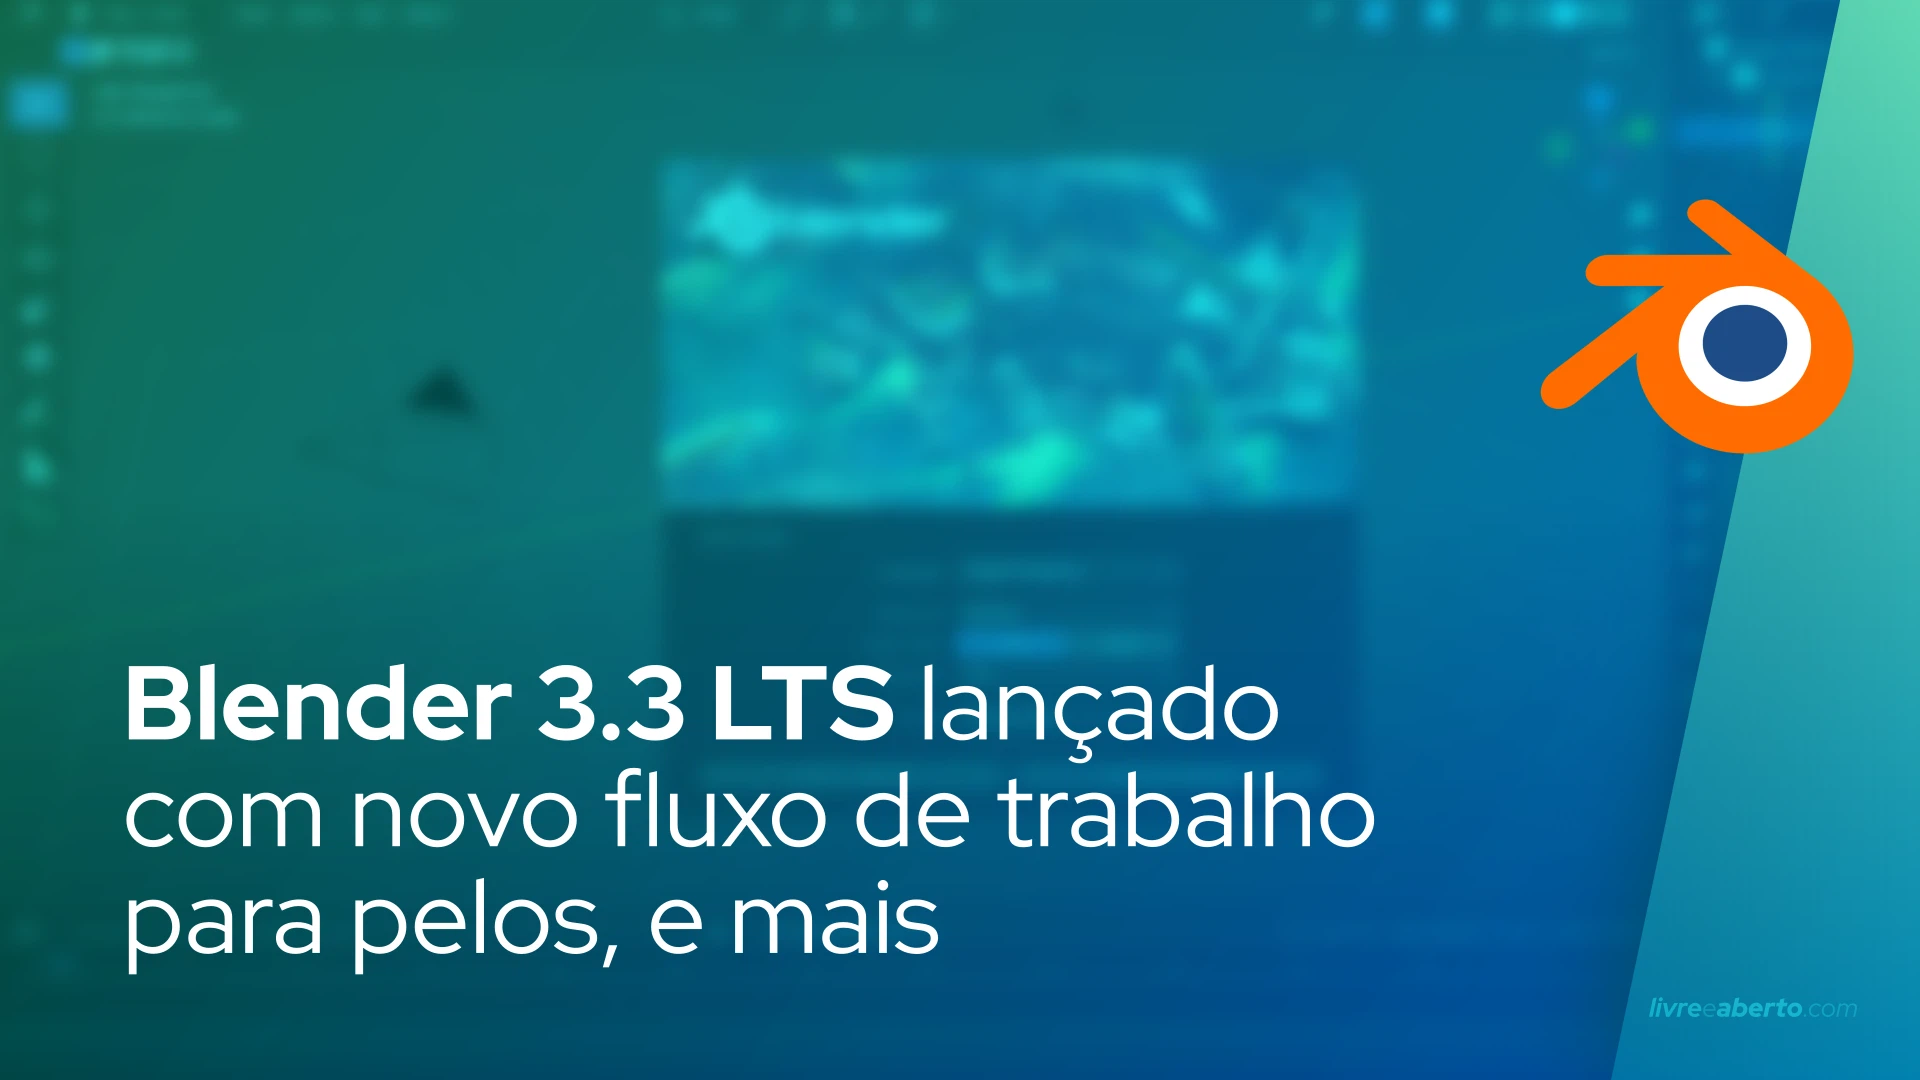 Blender 3.3 LTS lançado oficialmente com novo fluxo de trabalho para pelos, suporte para gráficos Intel Arc